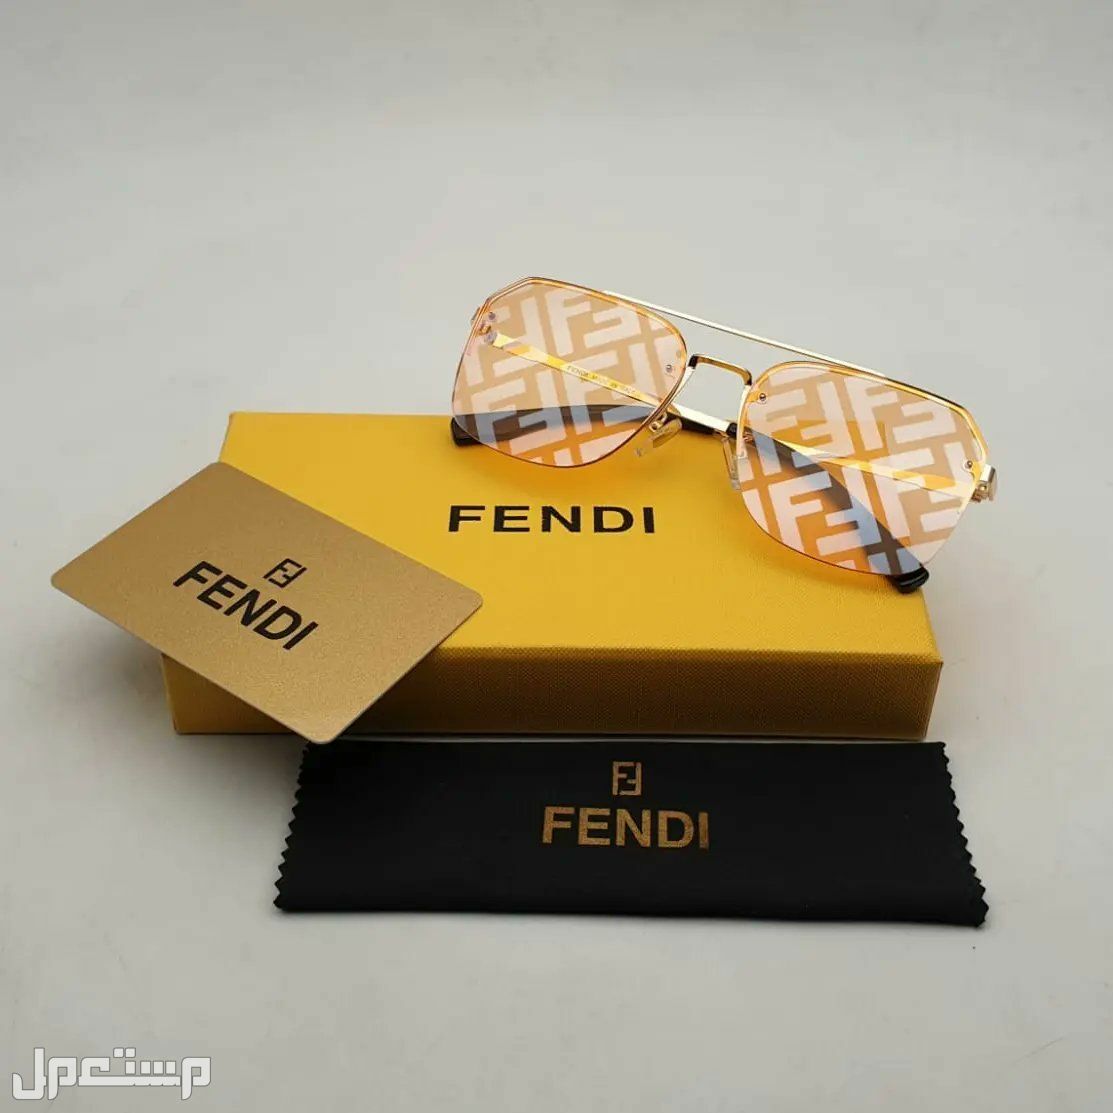 نظارات فندي Fendi النسائية تعرف على مواصفاتها وأسعارها كاملة في العراق فندي مميزة